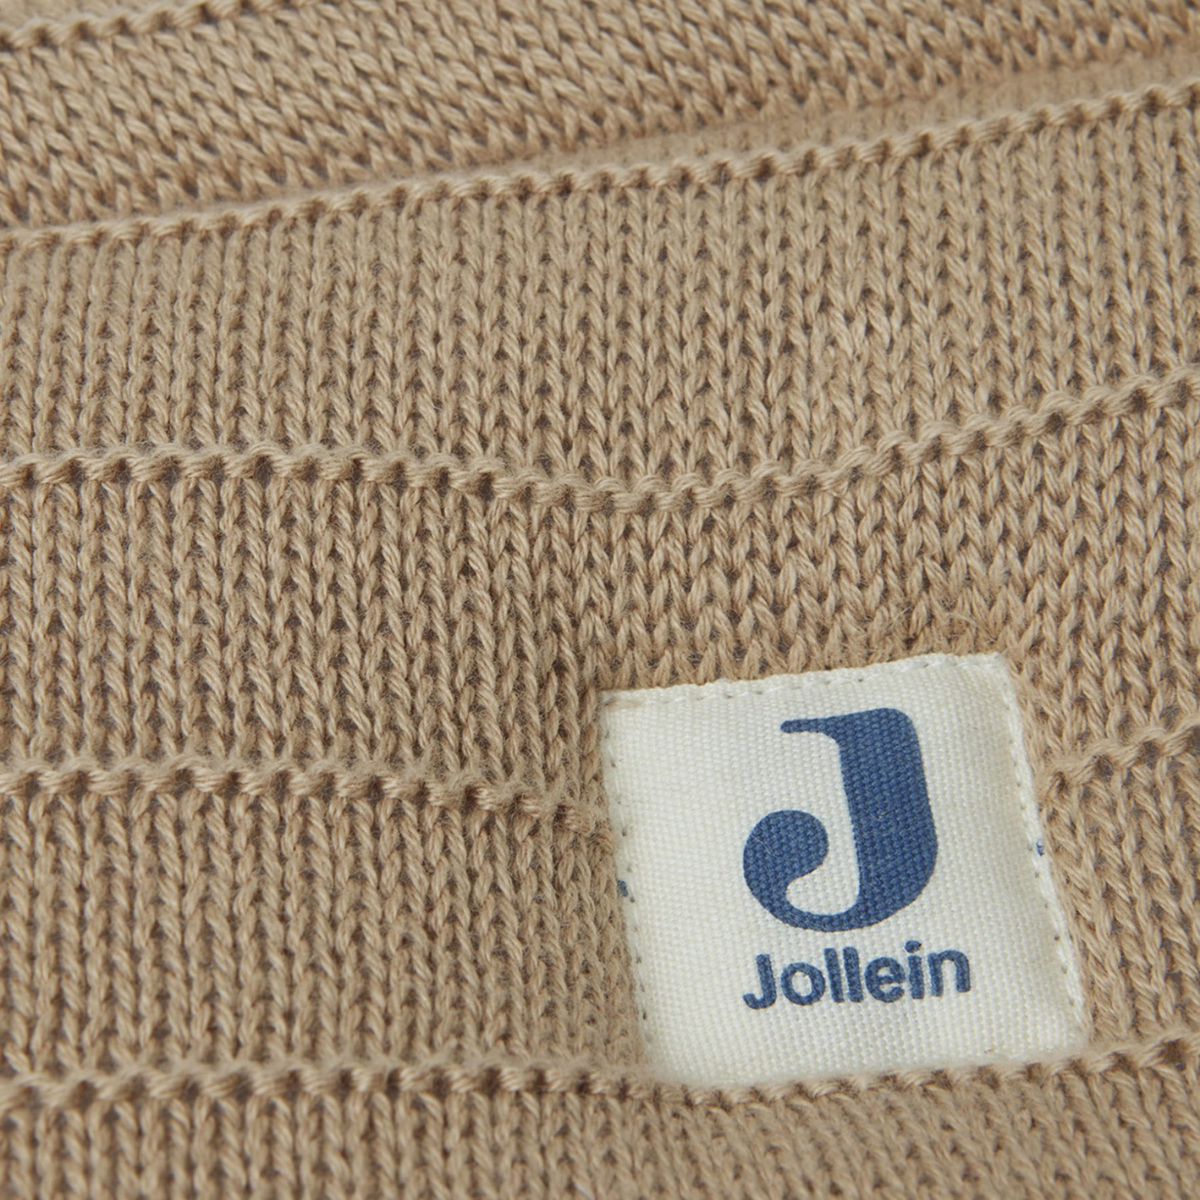 JOLLEIN – Tour de lit 35×180 pure knit biscuit